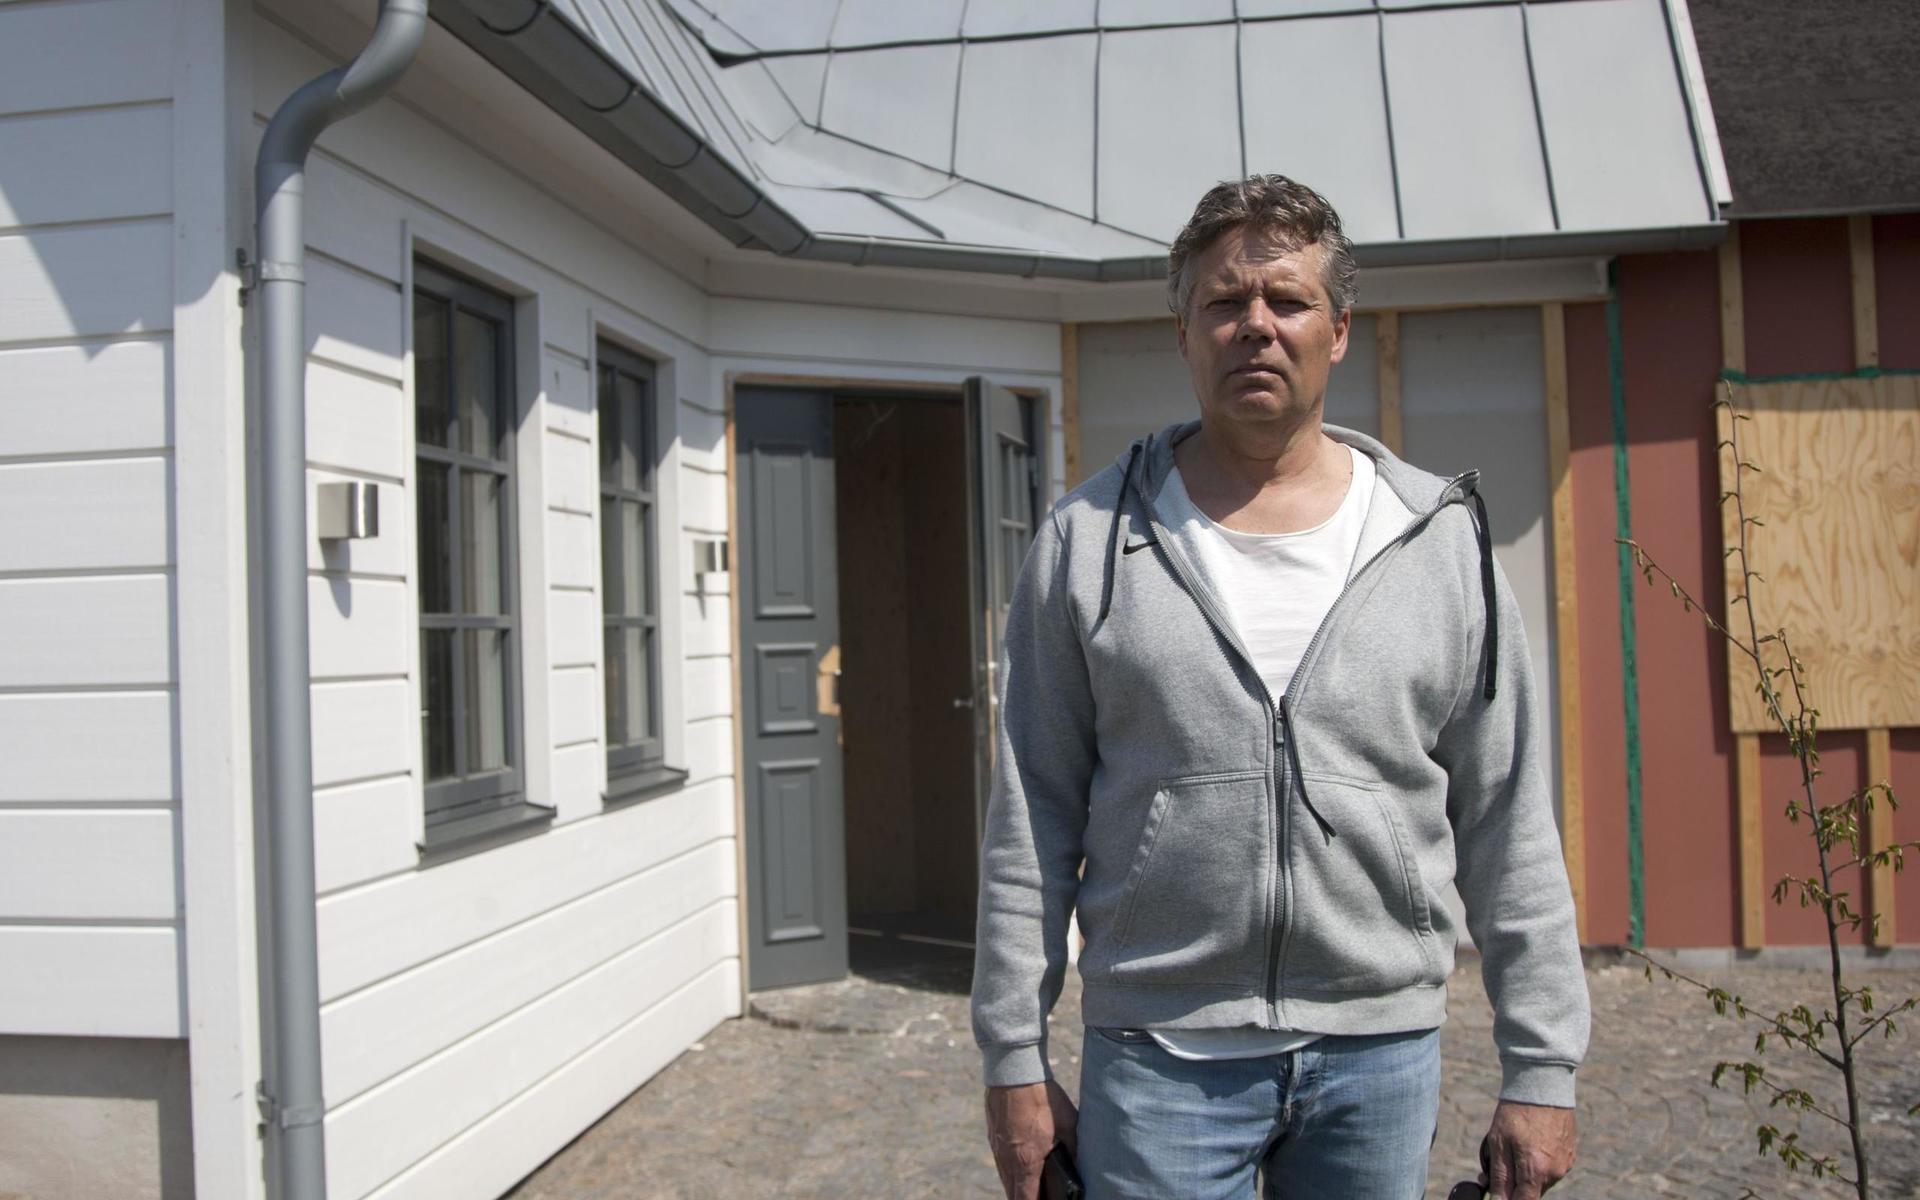 Anders Hagman överväger att sälja det brandskadade huset i befintligt skick. Det gör honom skuldfri, men fortfarande återstår tvisten med försäkringsbolaget – som anklagar honom för att vara mordbrännare.